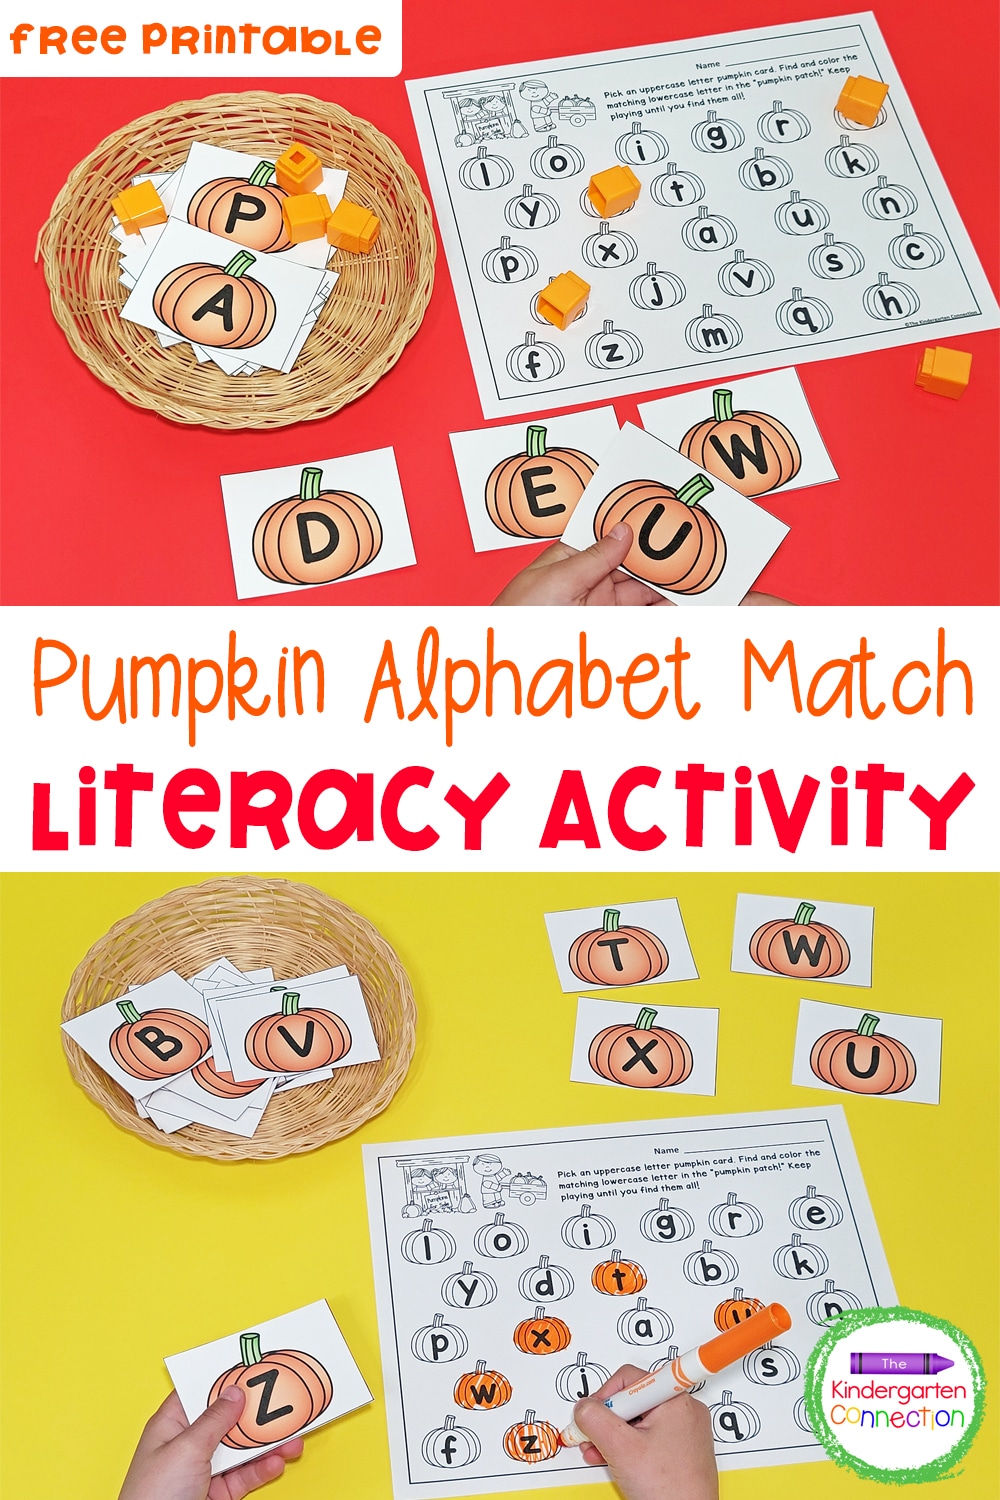 Pumpkin Alphabet Match